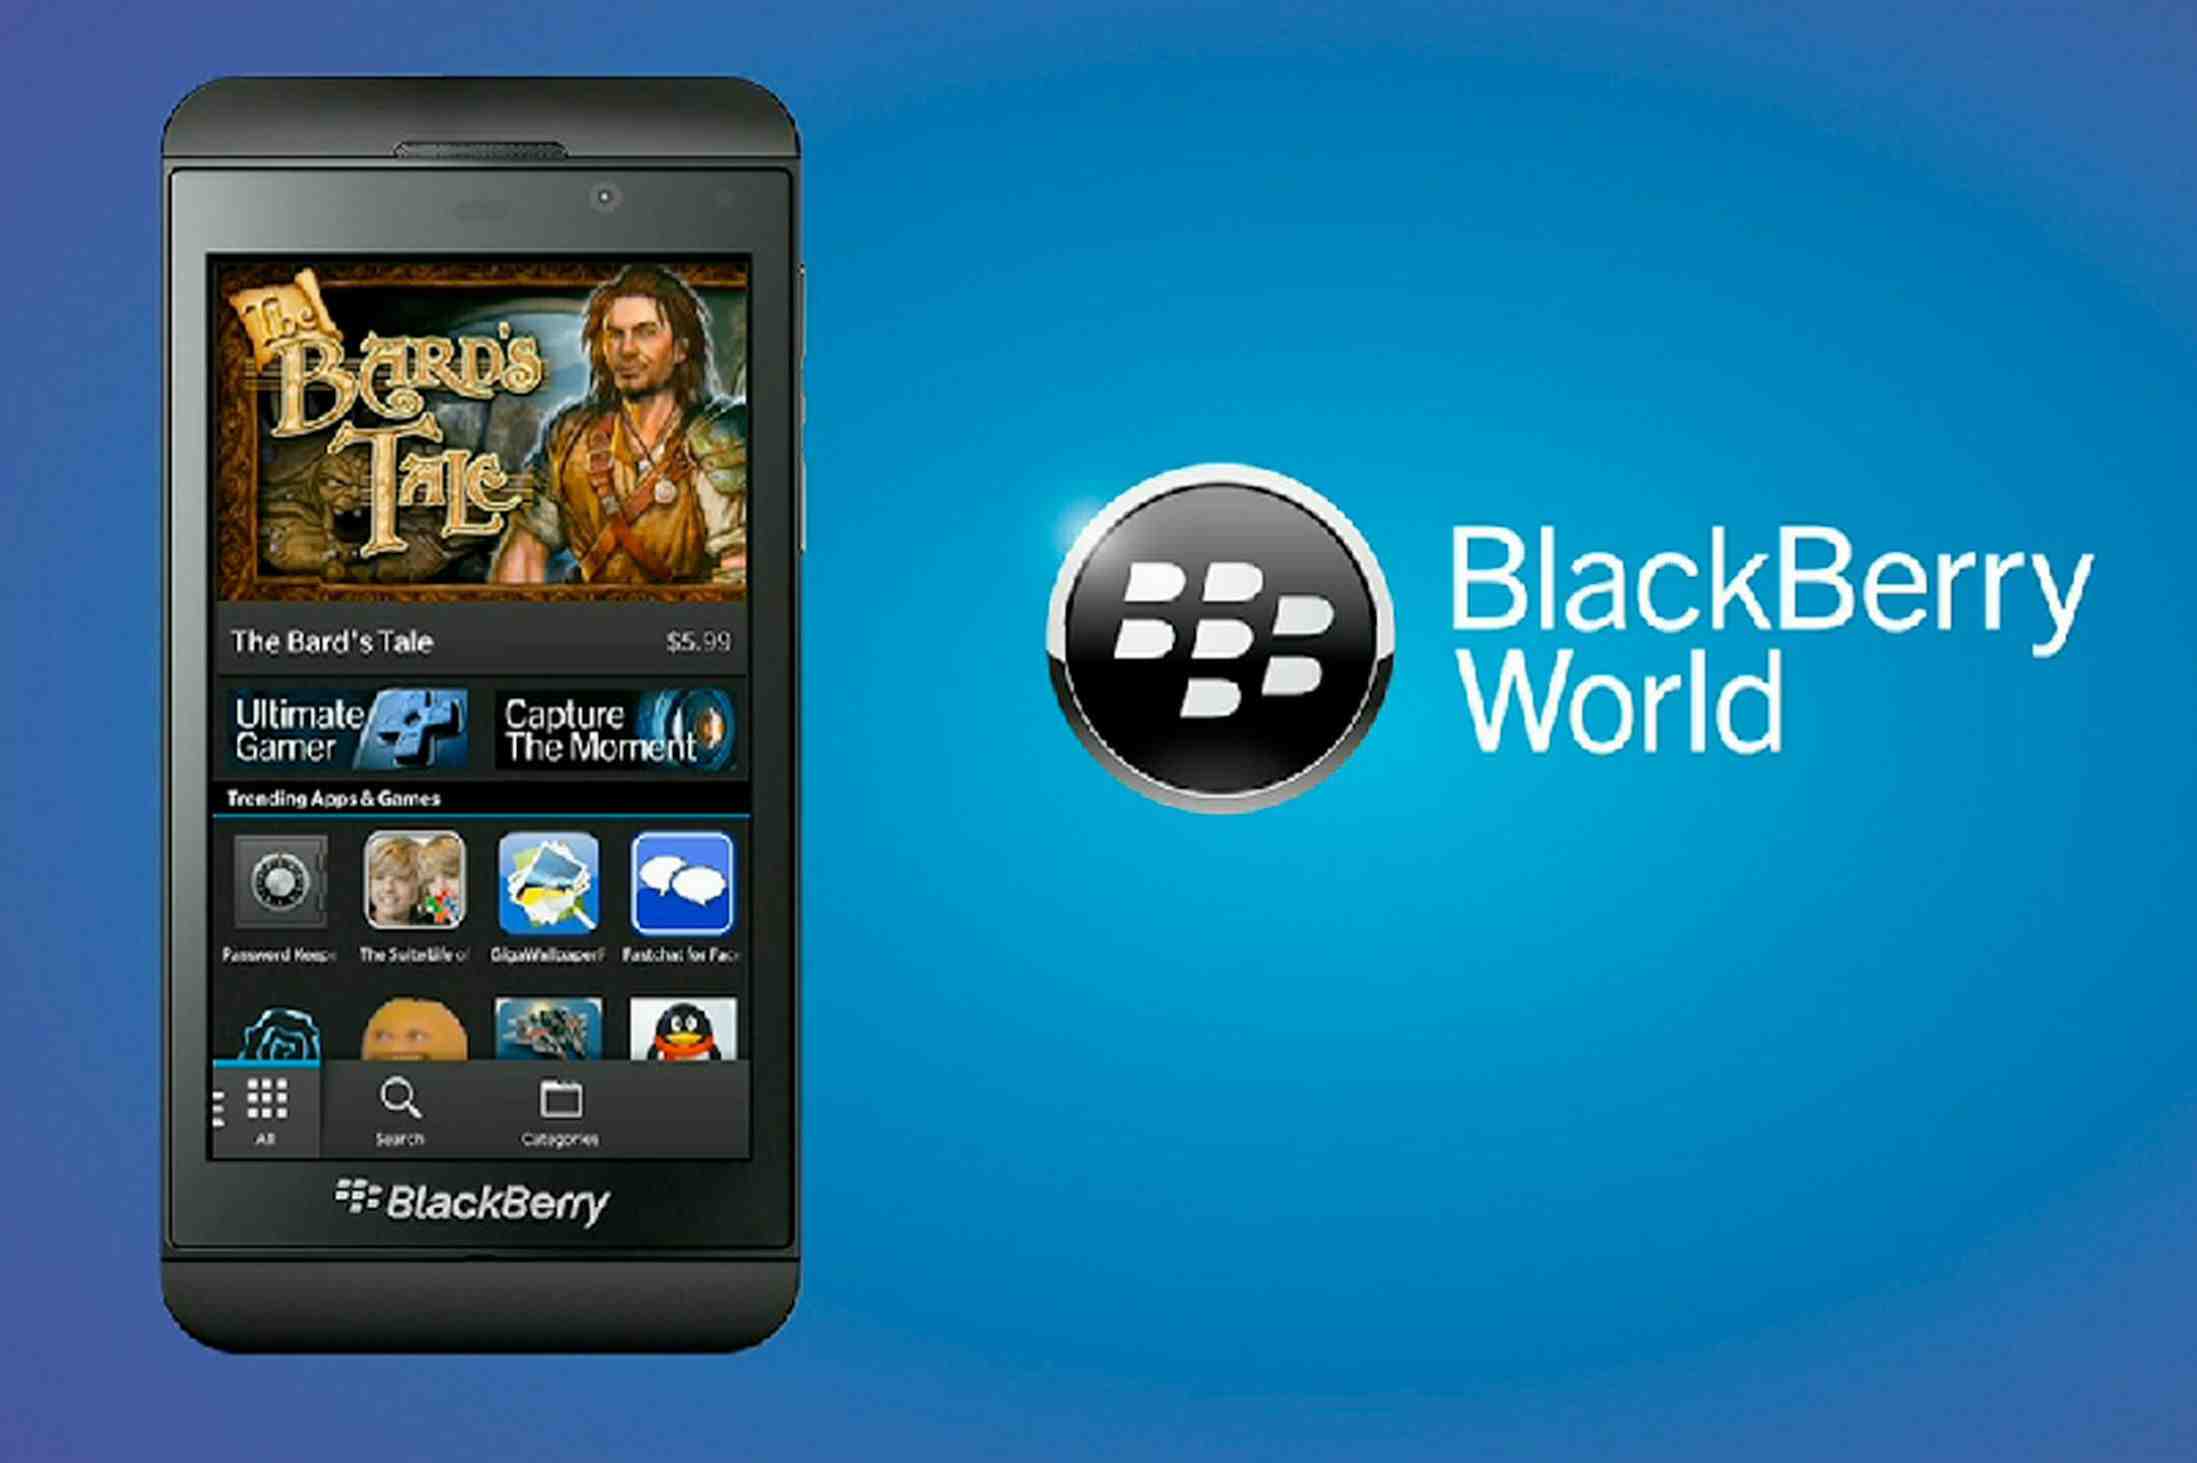 update blackberry link desktop software